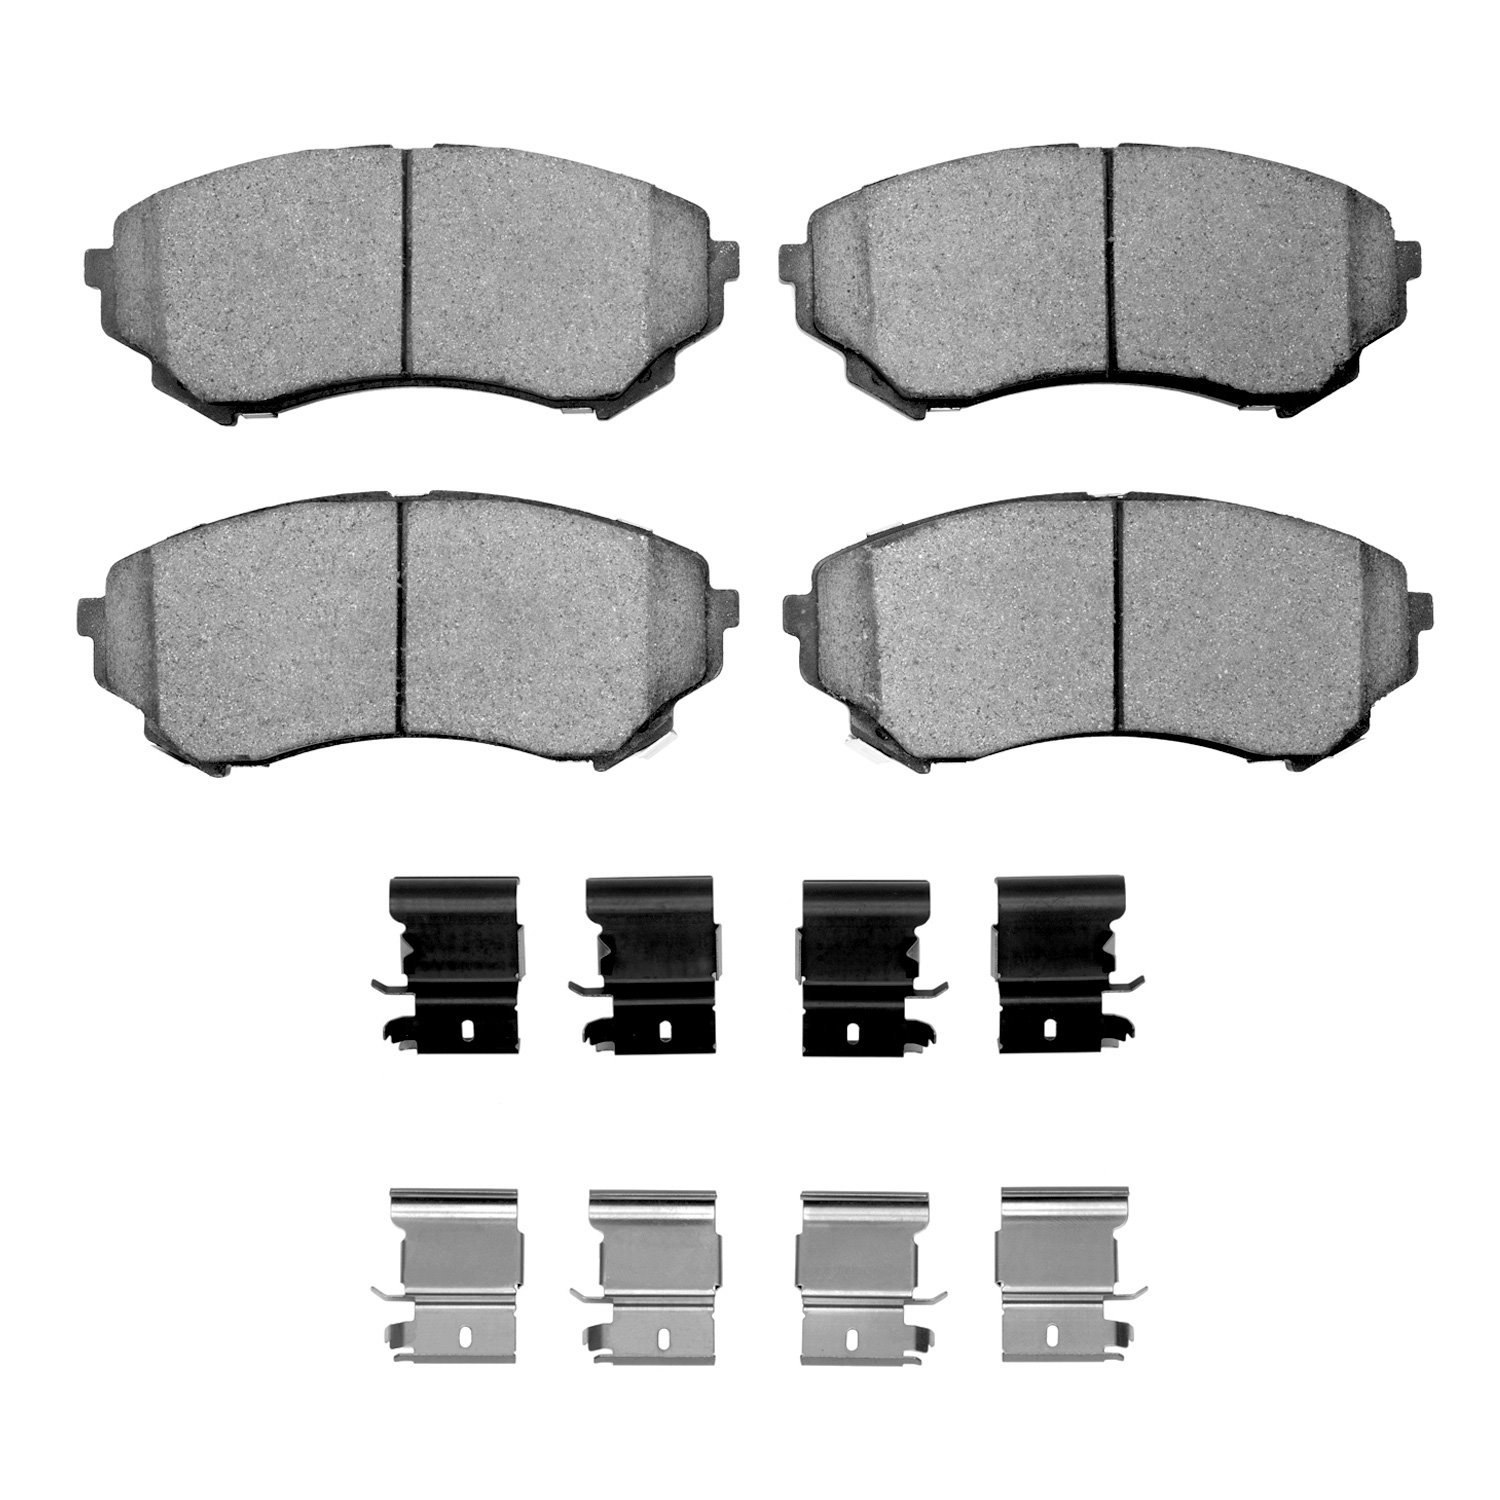 1600-1331-01 5000 Euro Ceramic Brake Pads & Hardware Kit, 2008-2014 GM, Position: Front